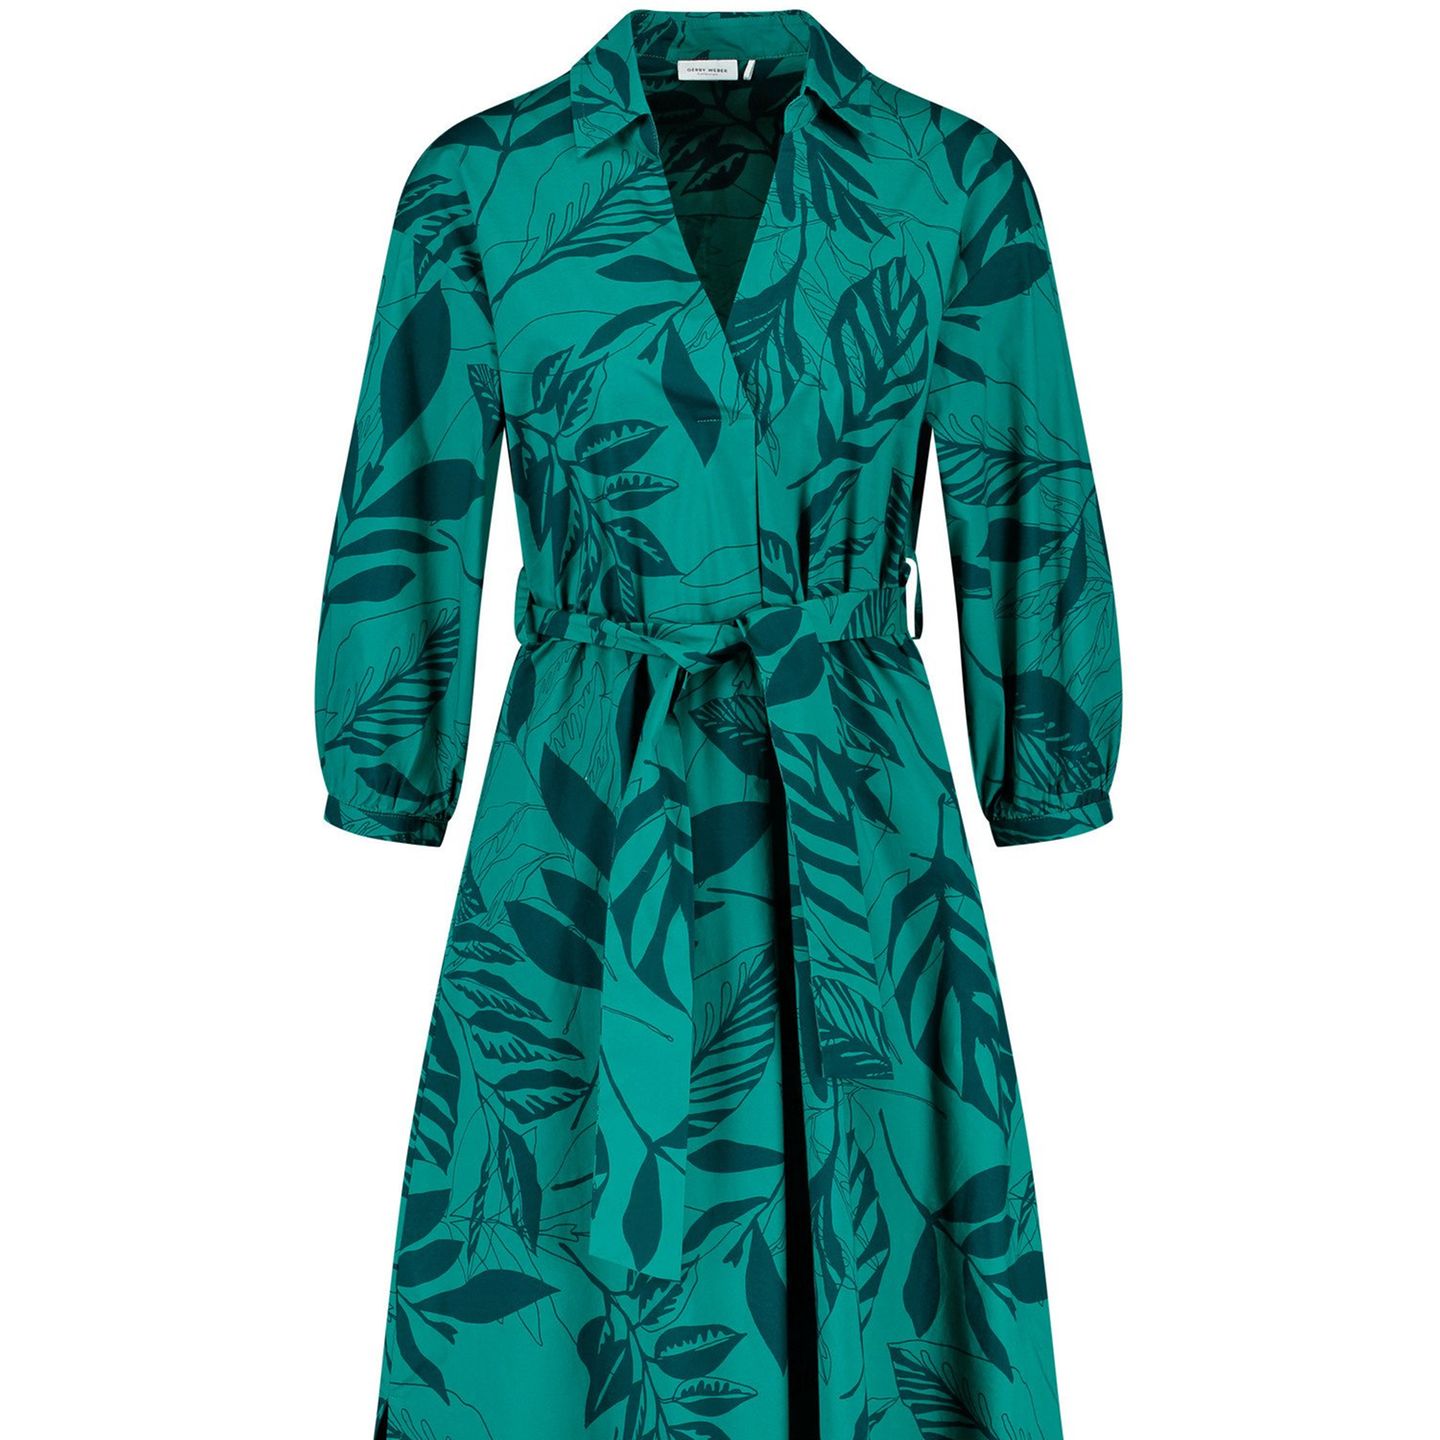 Aus natürlicher Baumwolle bringt dieses schwingende Kleid ein Stück Natur in deinen Kleiderschrank. Der Blätter-Print und die unterschiedlichen Grüntöne schreien geradezu nach Frühling und wärmeren Temperaturen. Kleid mit Blätterdruck von Gerry Weber, circa 130 Euro.